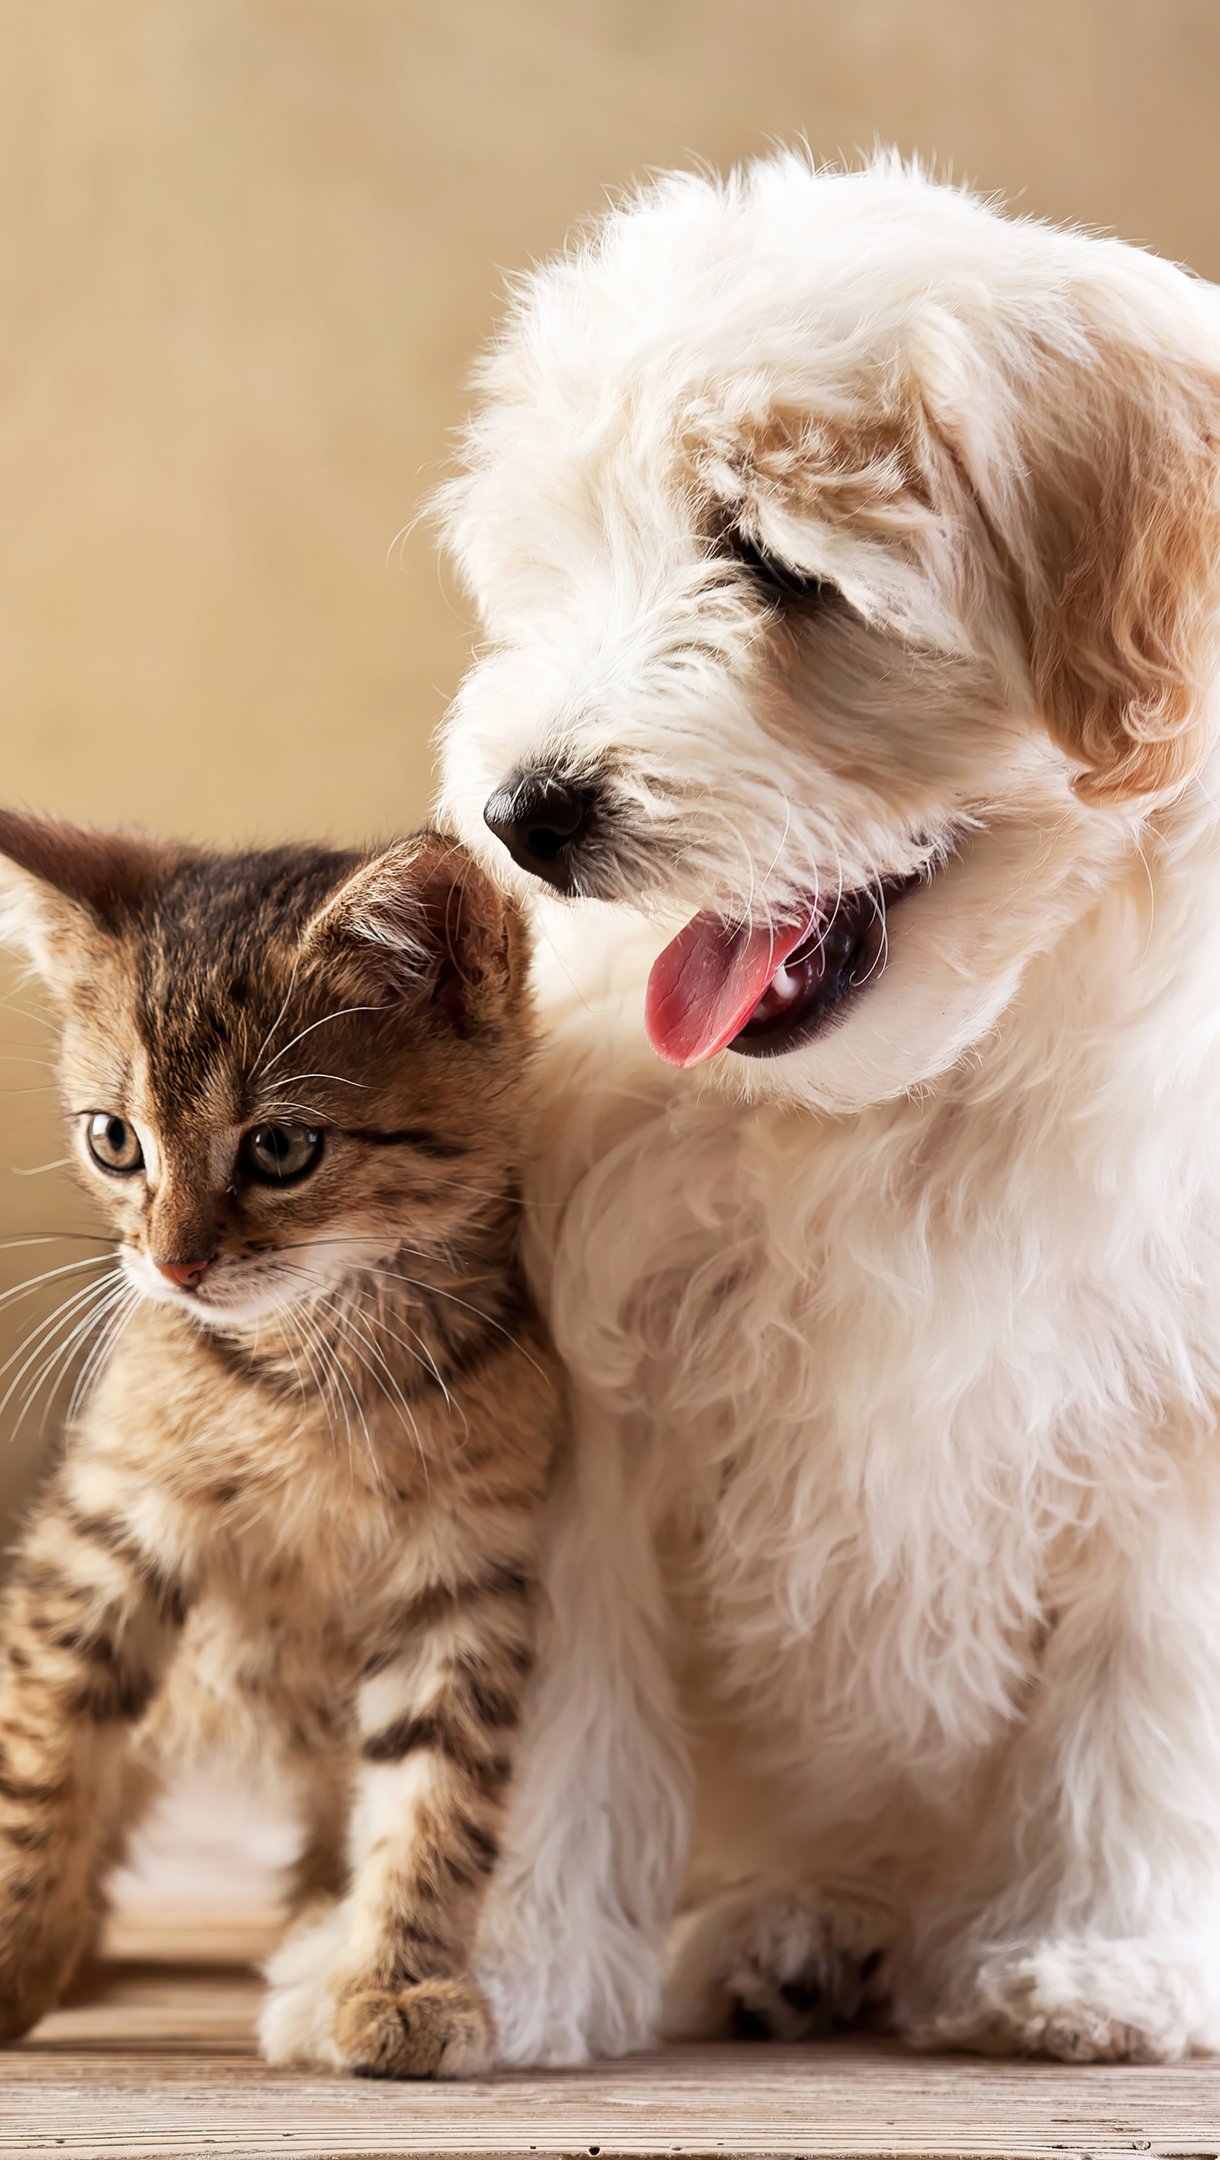 Wallpaper Puppy and kitten Vertical